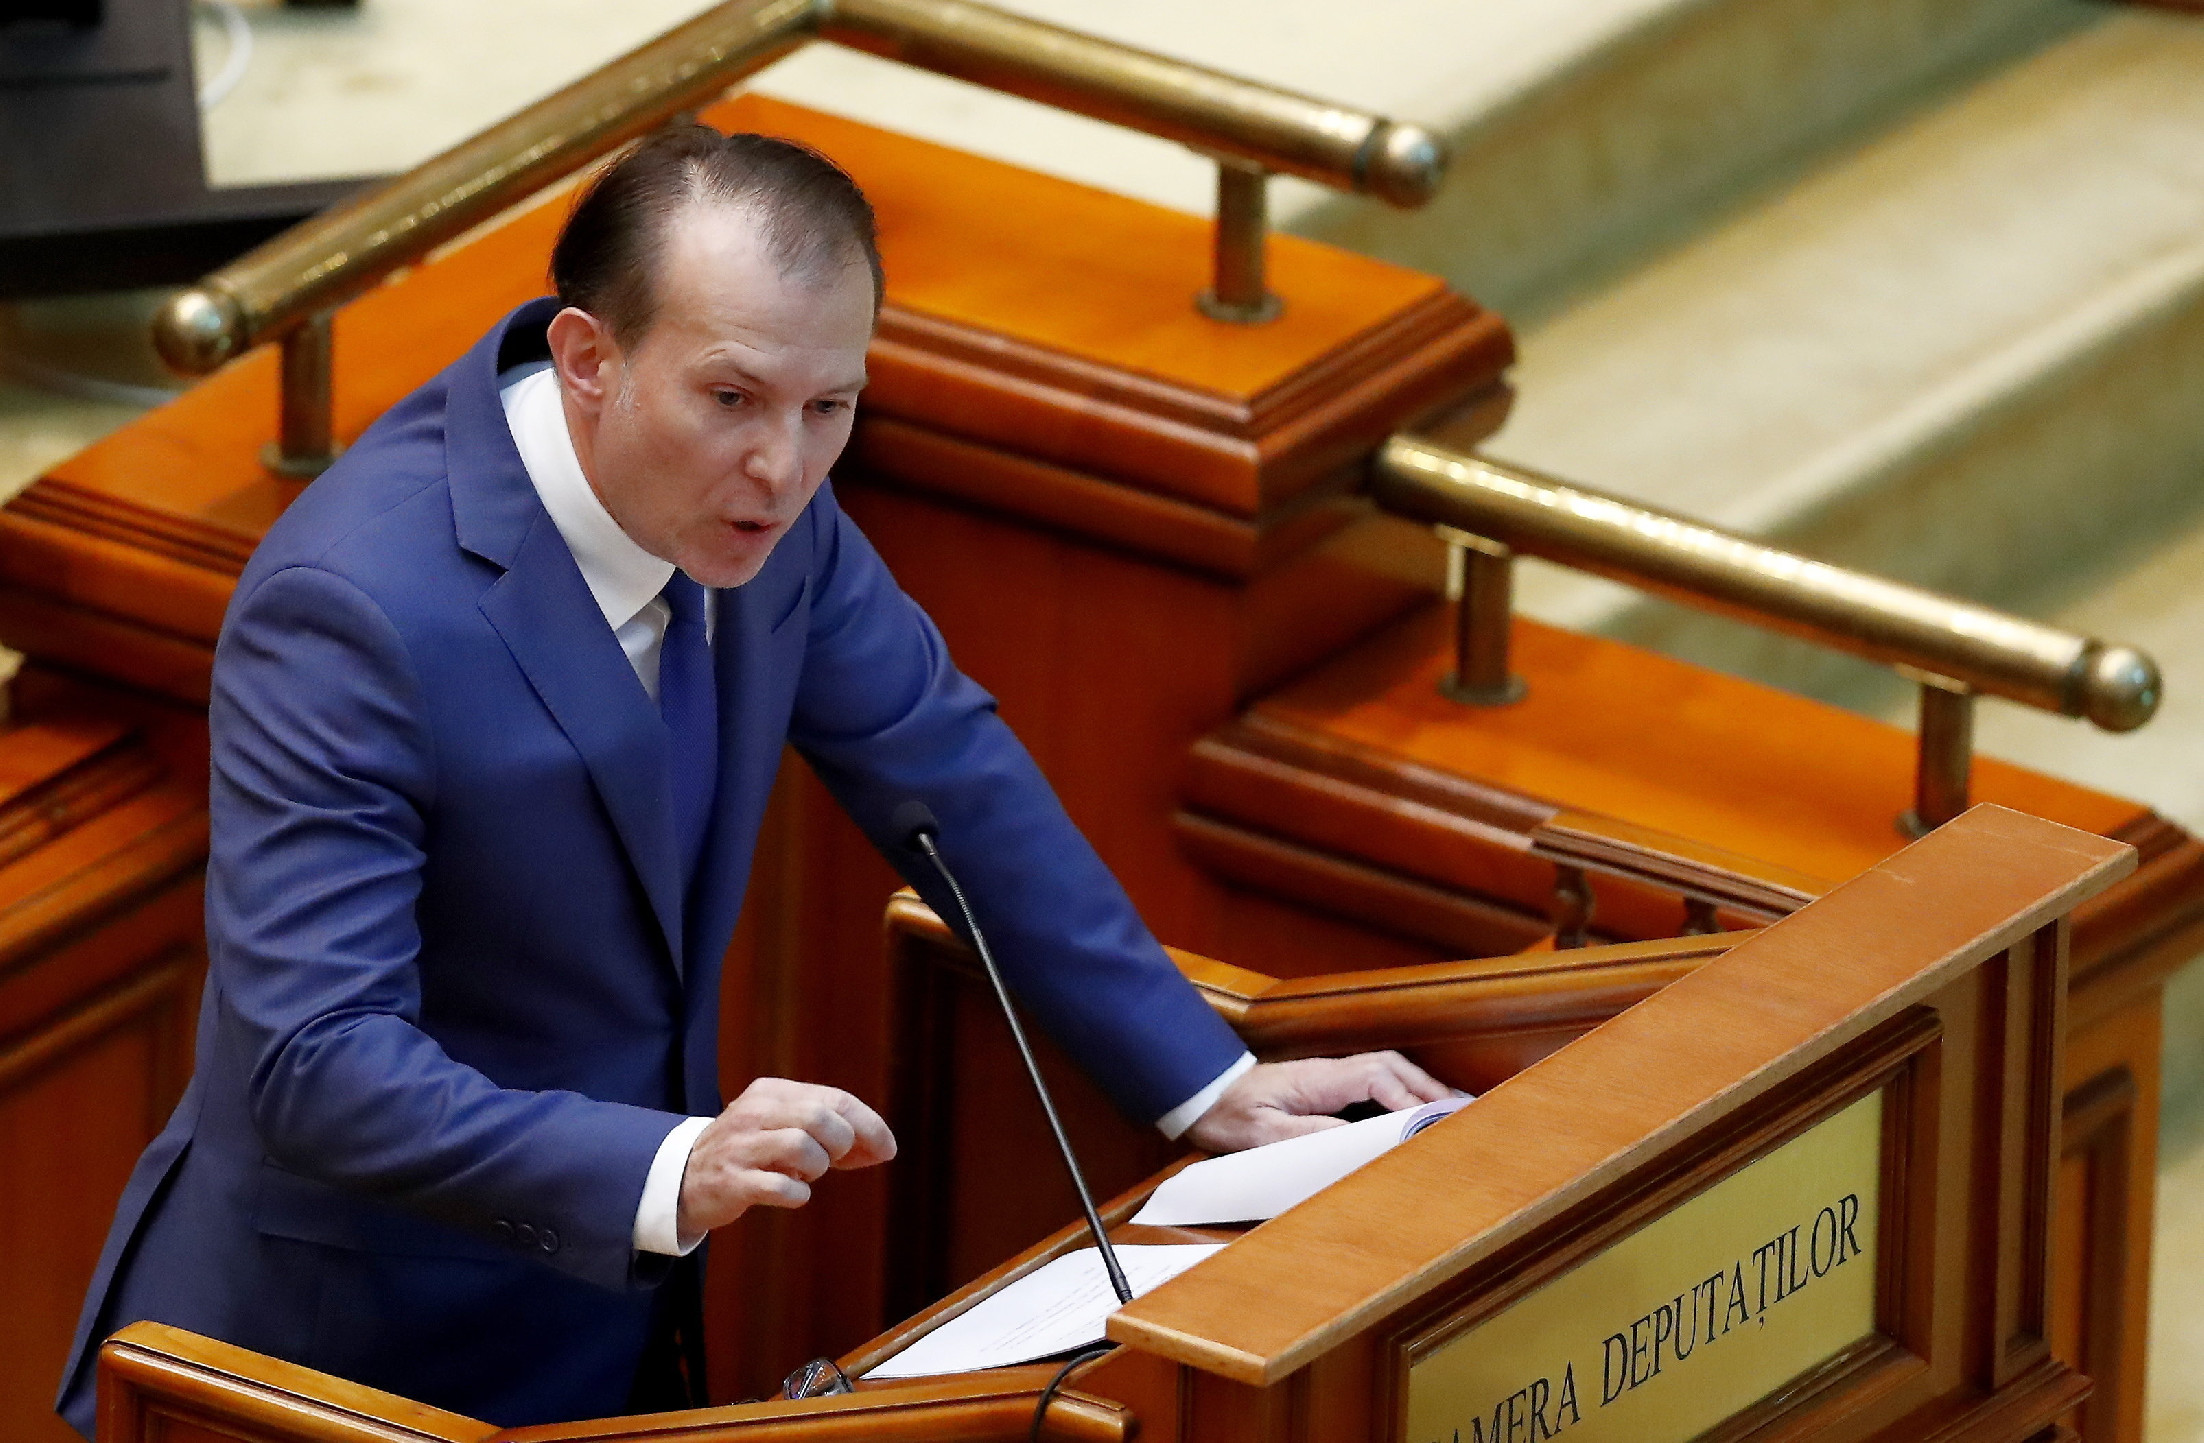 Miniszterelnökként megbukott, most házelnöki posztjából is távoznia kell Florin Cîțunak